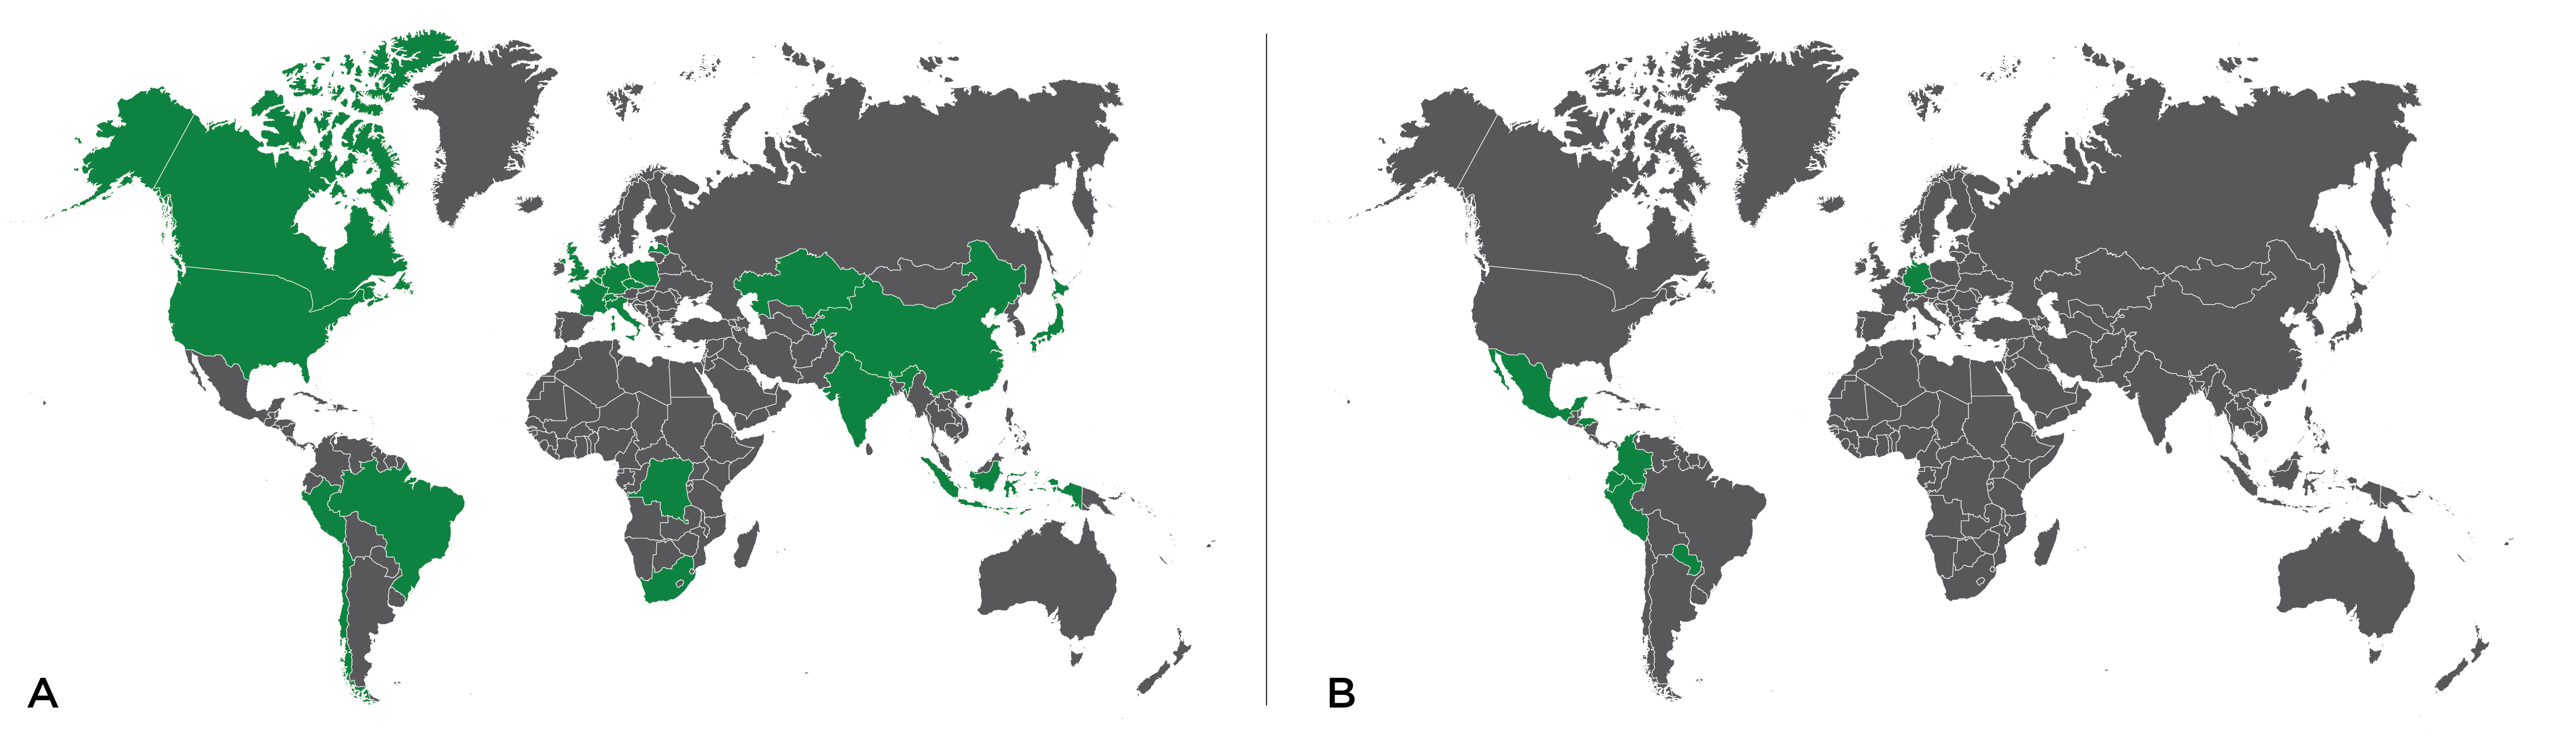 UFCM World Participation Map